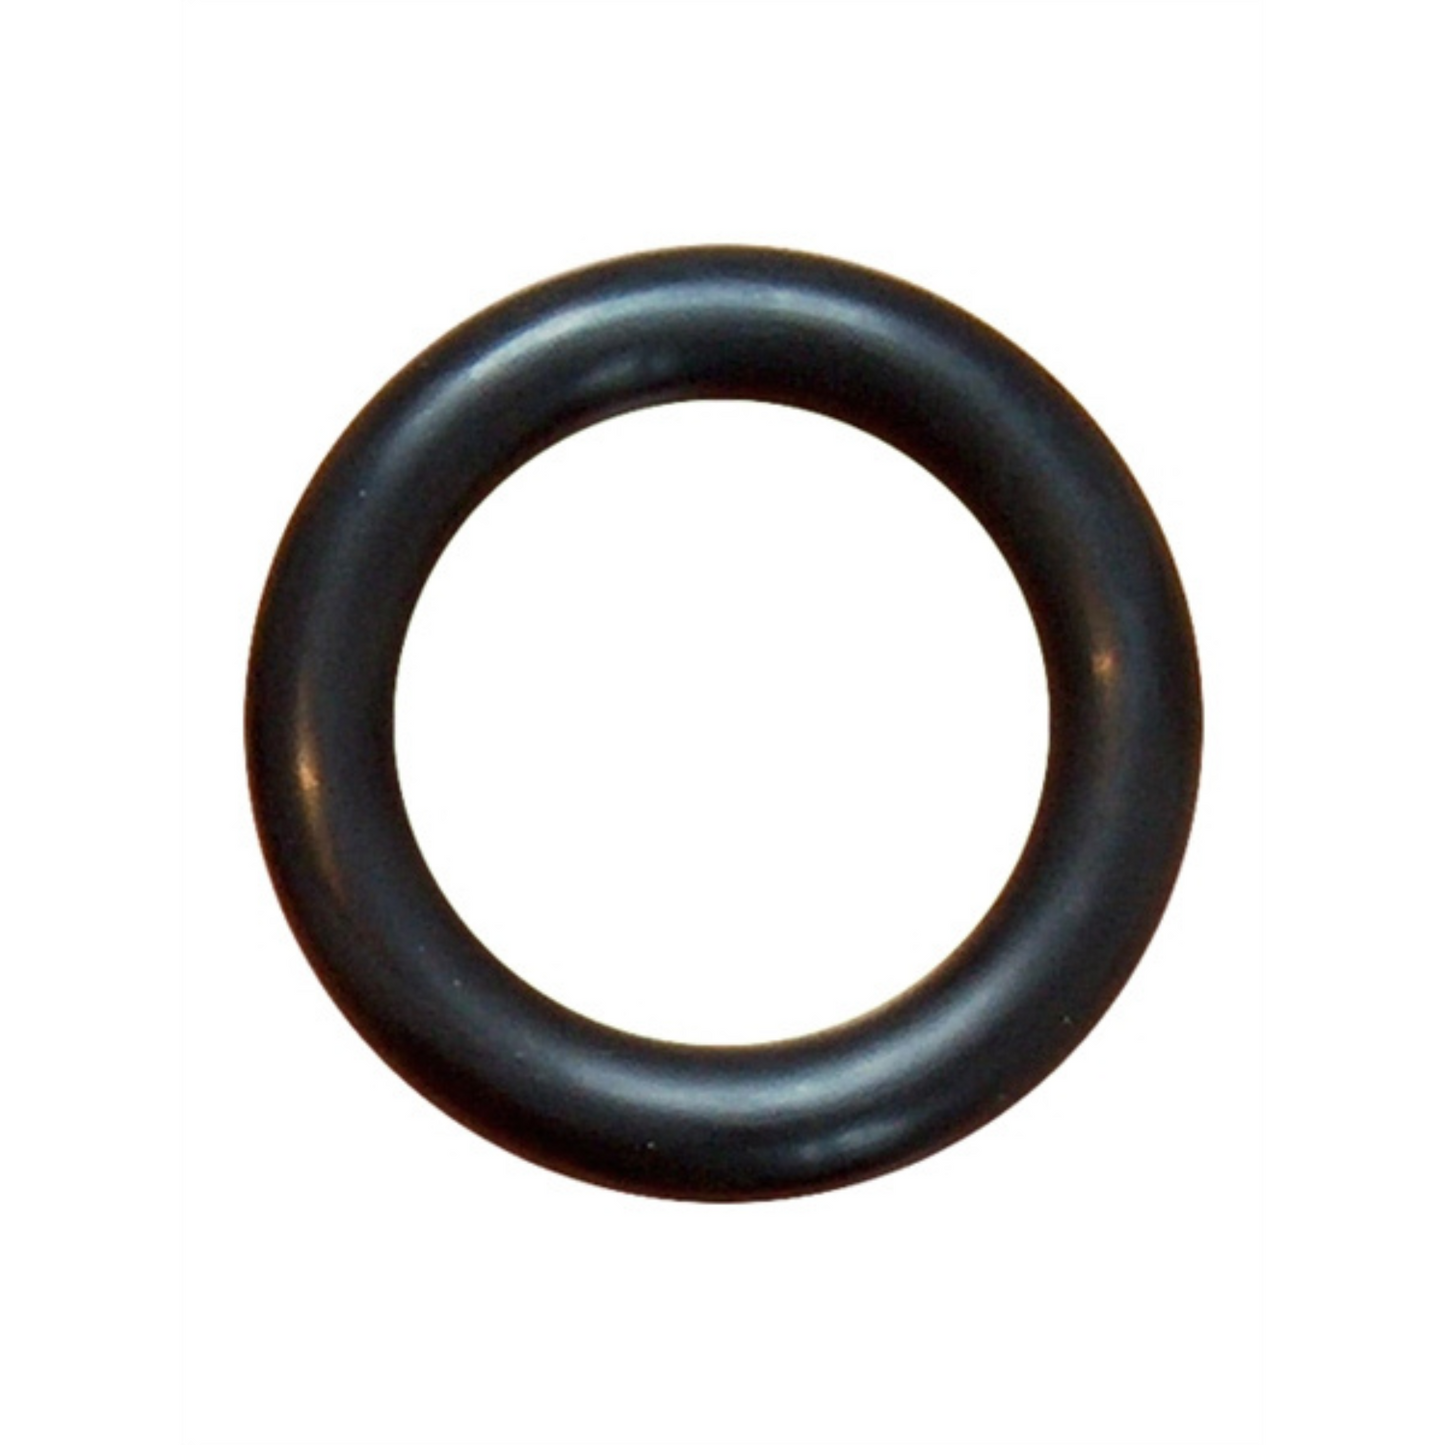 Deze dikke zwarte cock ring met een diameter van 45 mm, van Mister B en te koop bij Flavourez.